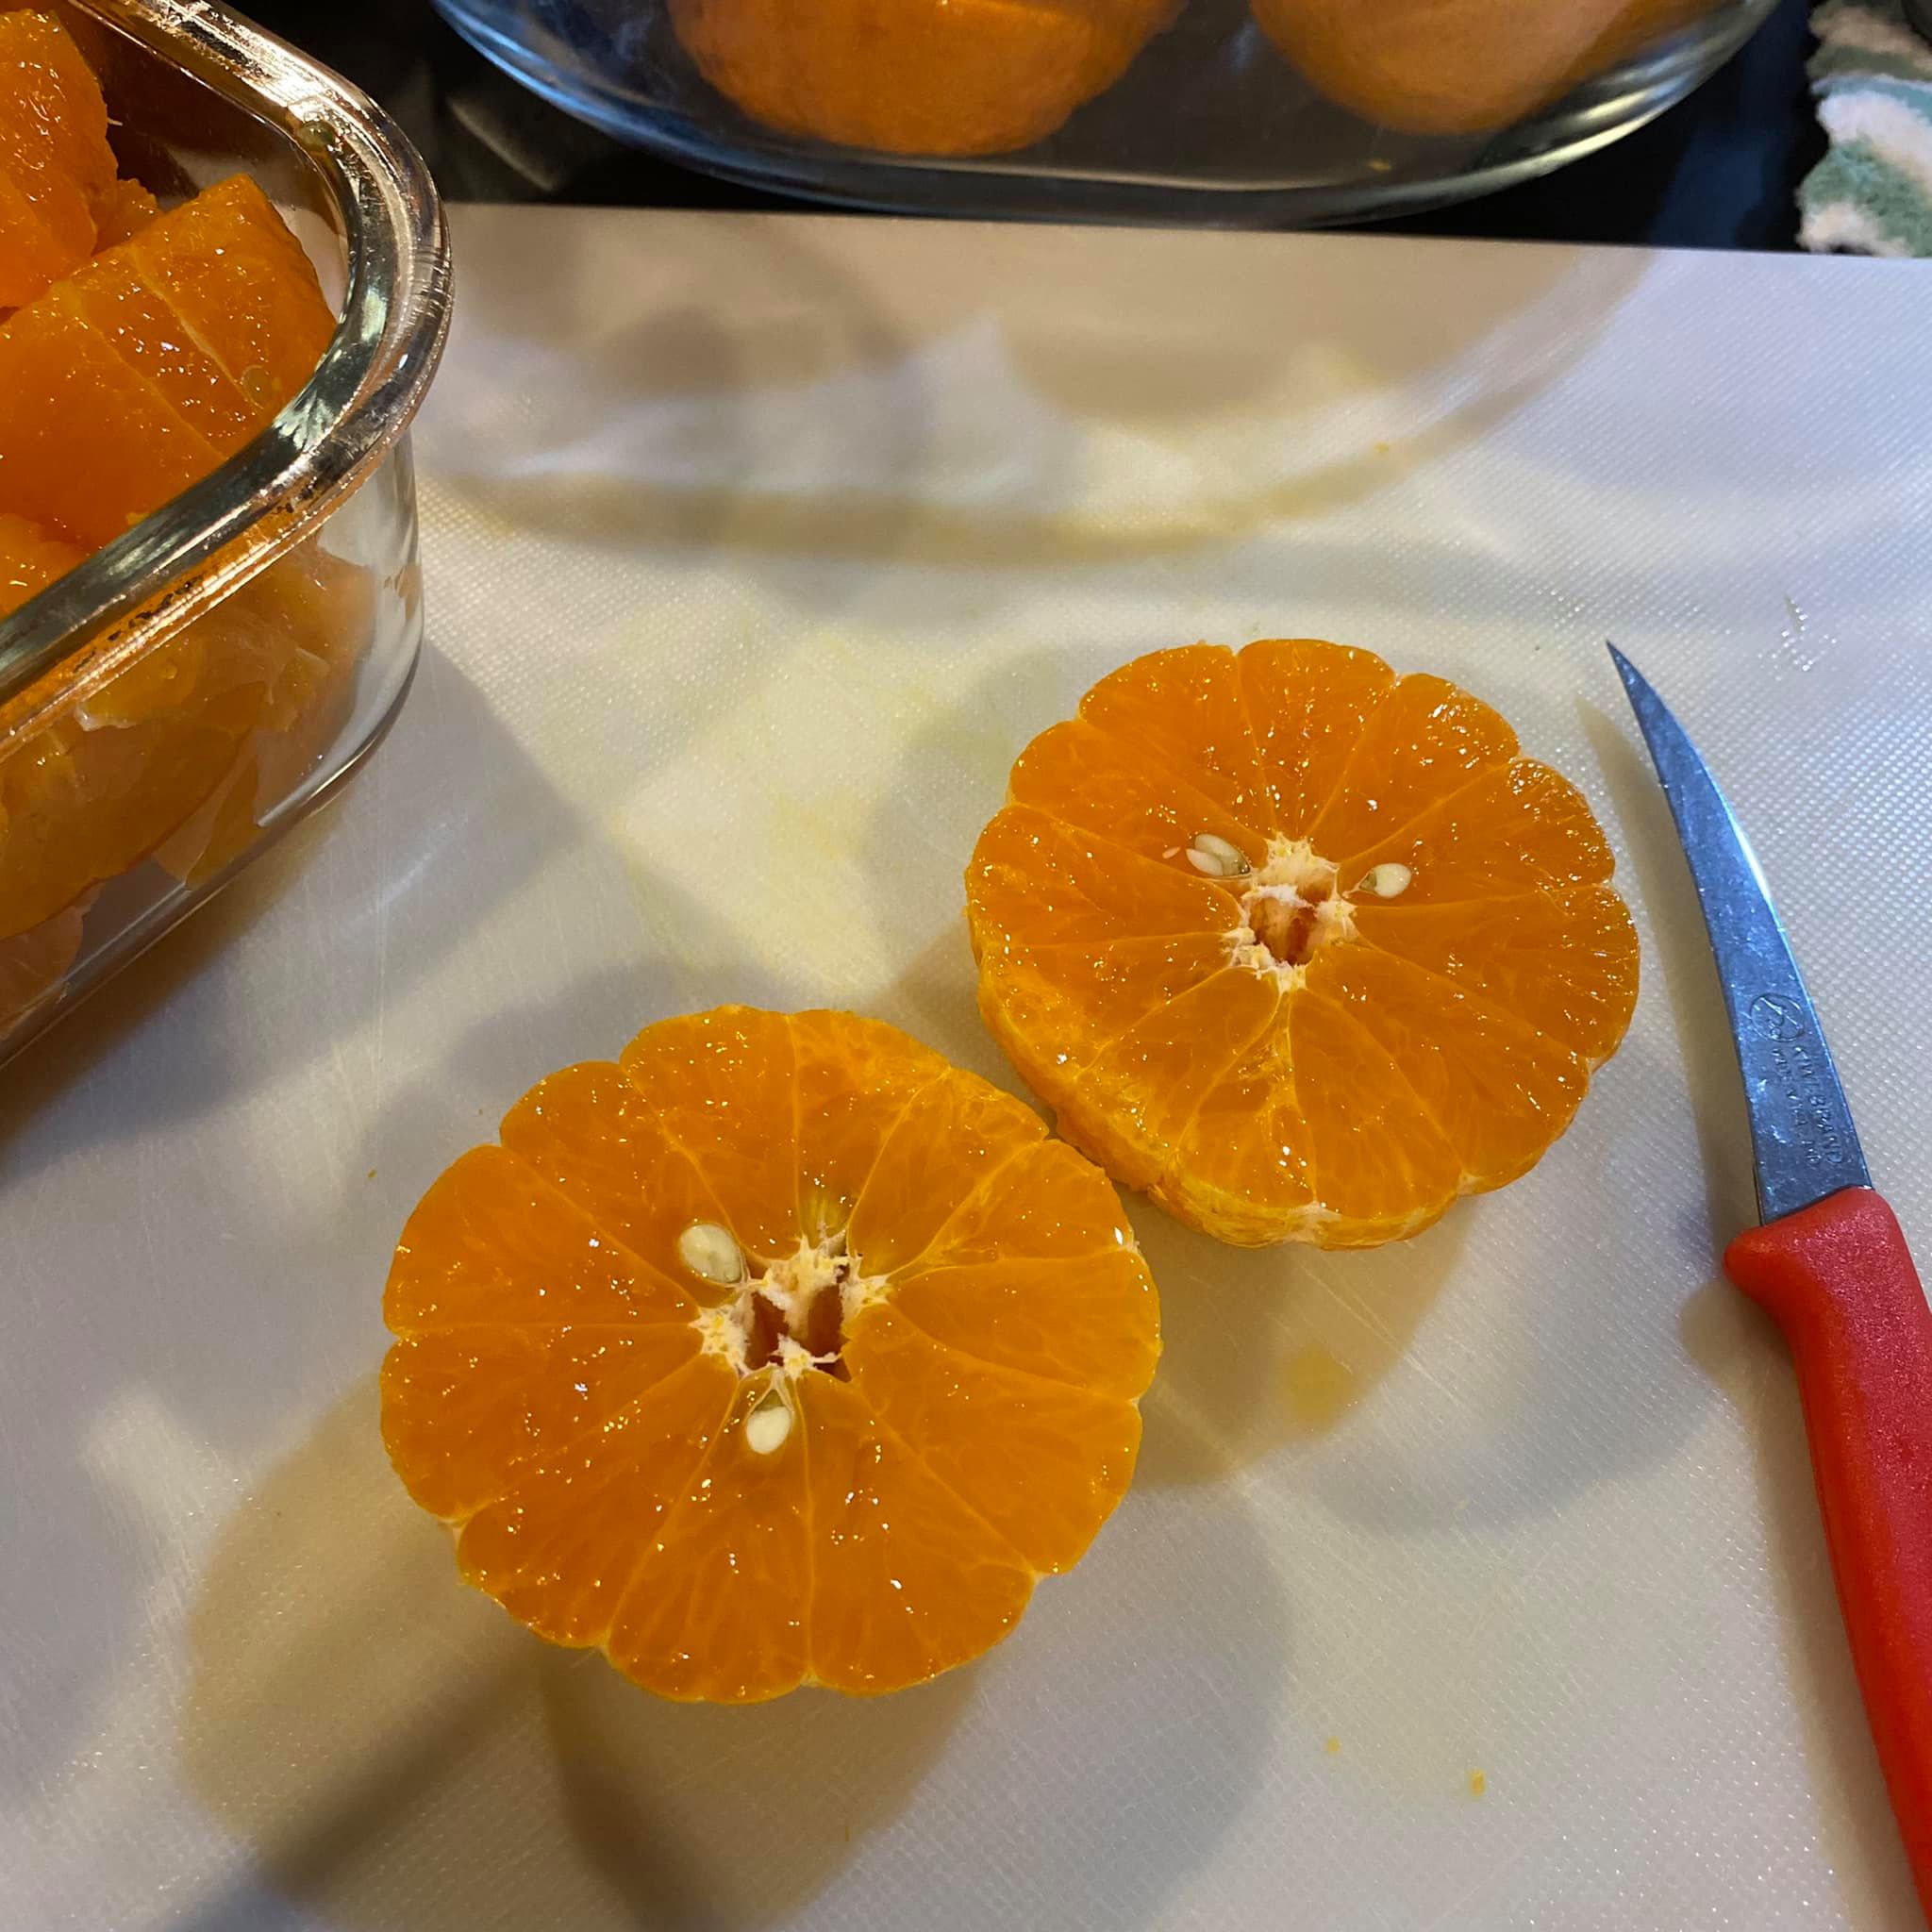 ปอกส้มยังไงให้น่าทาน4